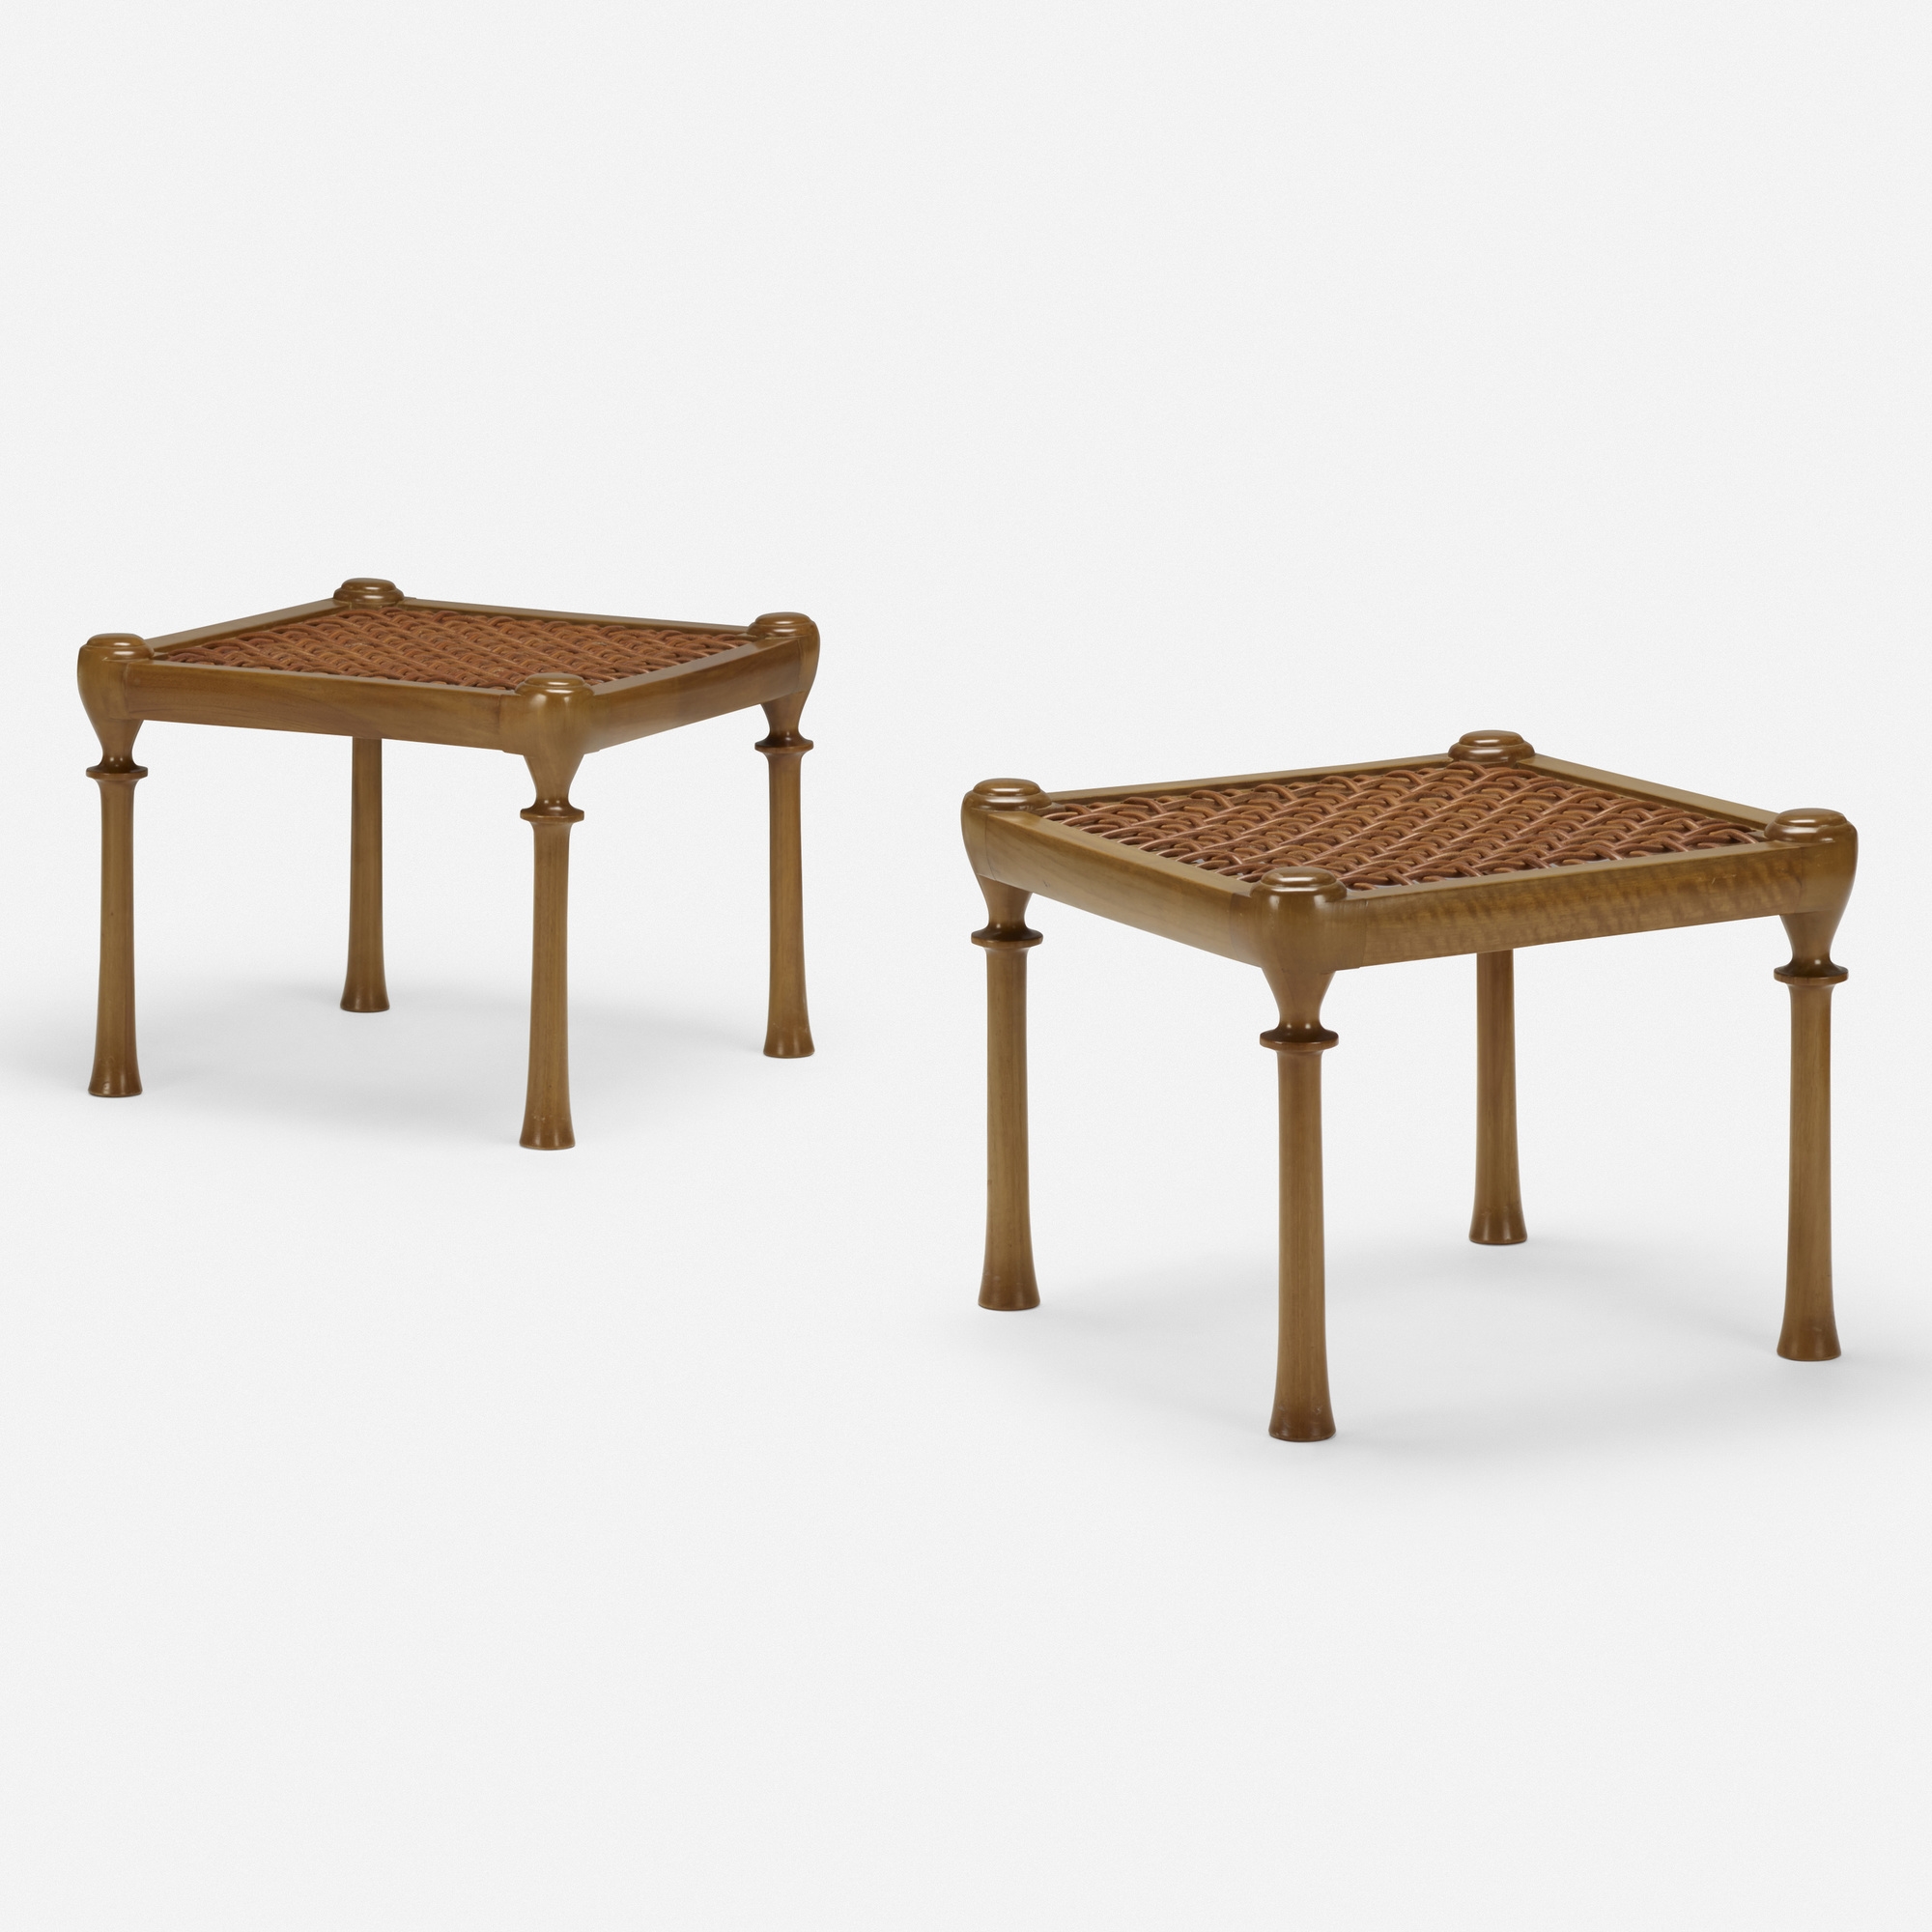 Diphros stools, pair by Terence Harold Robsjohn-Gibbings, 1961